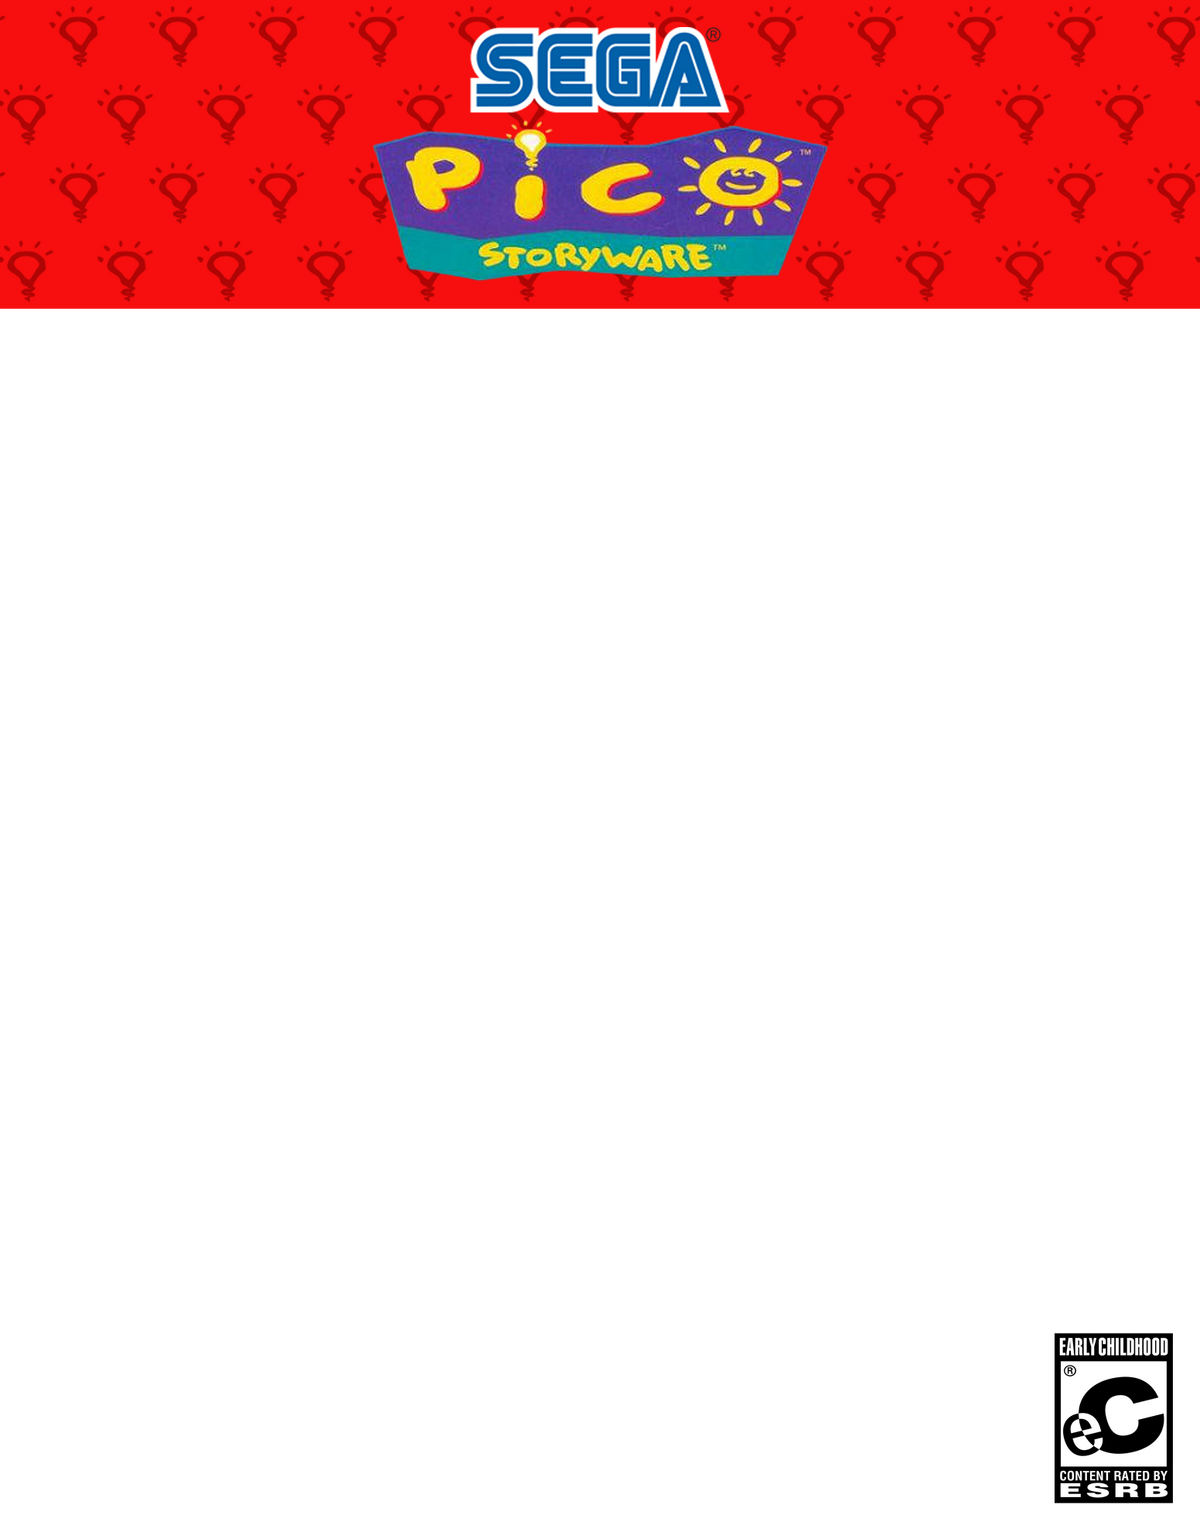 Sega Pico, Video Games Fanon Wiki